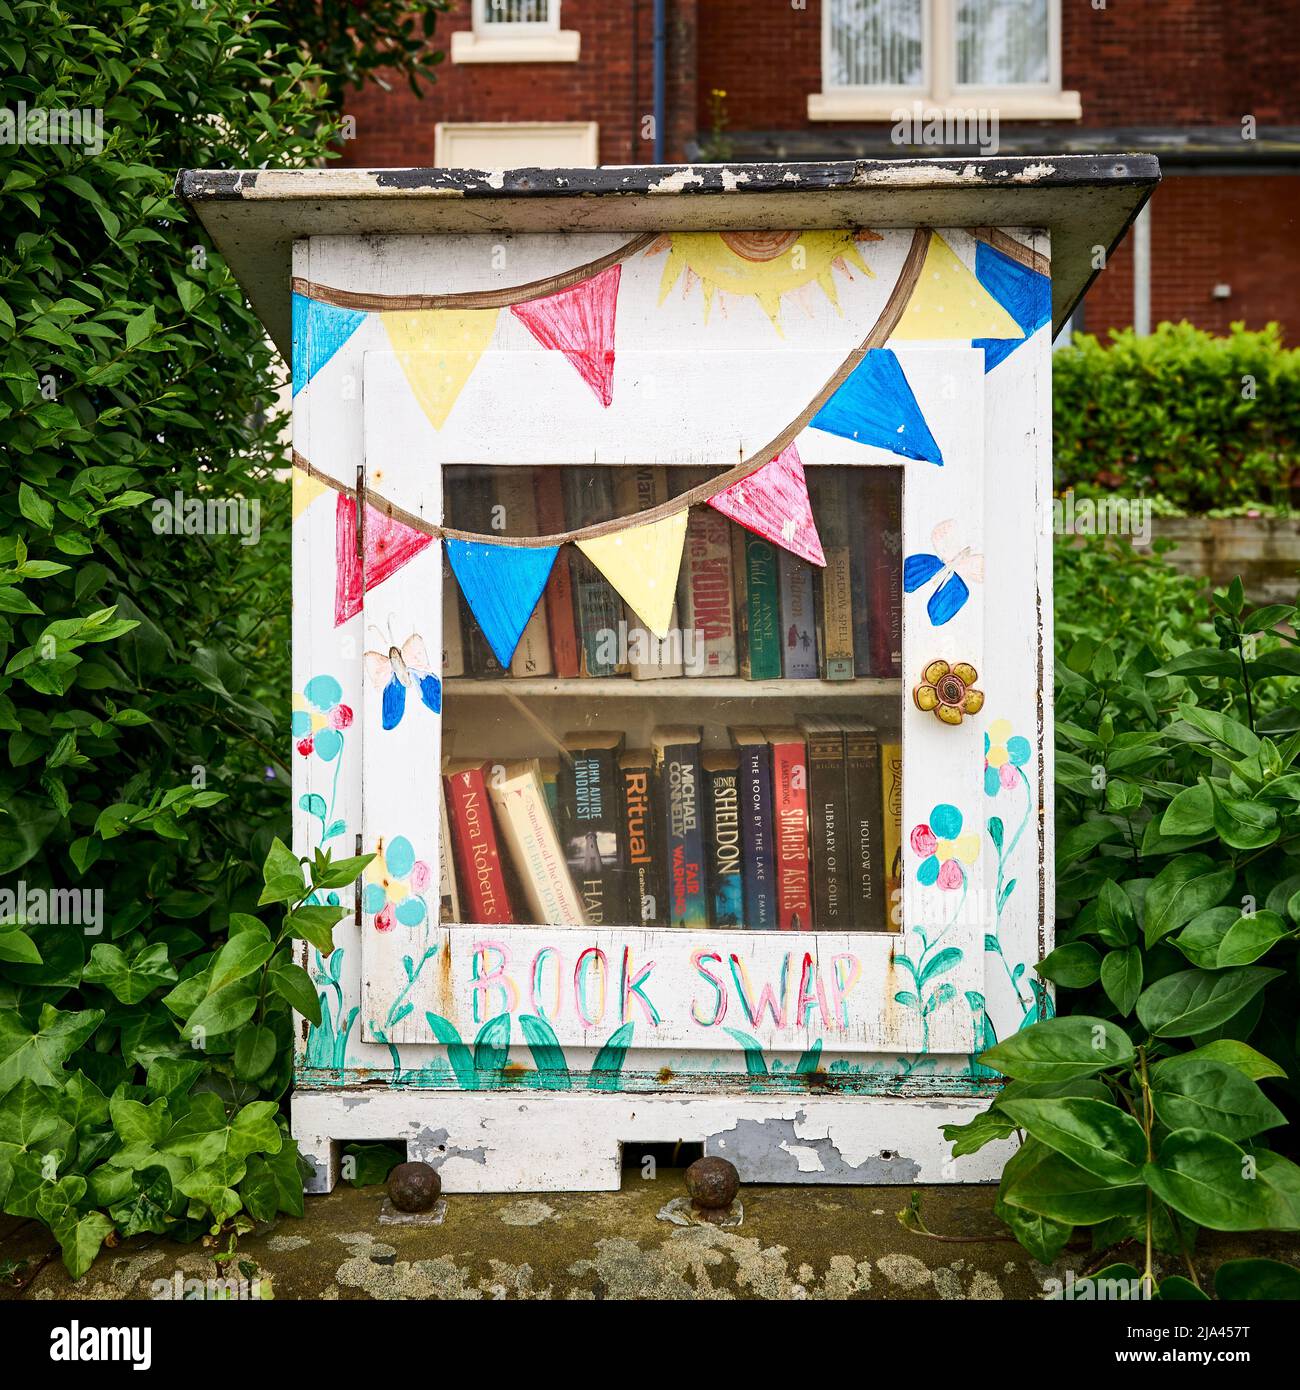 Book swap box on garden wall Stock Photo